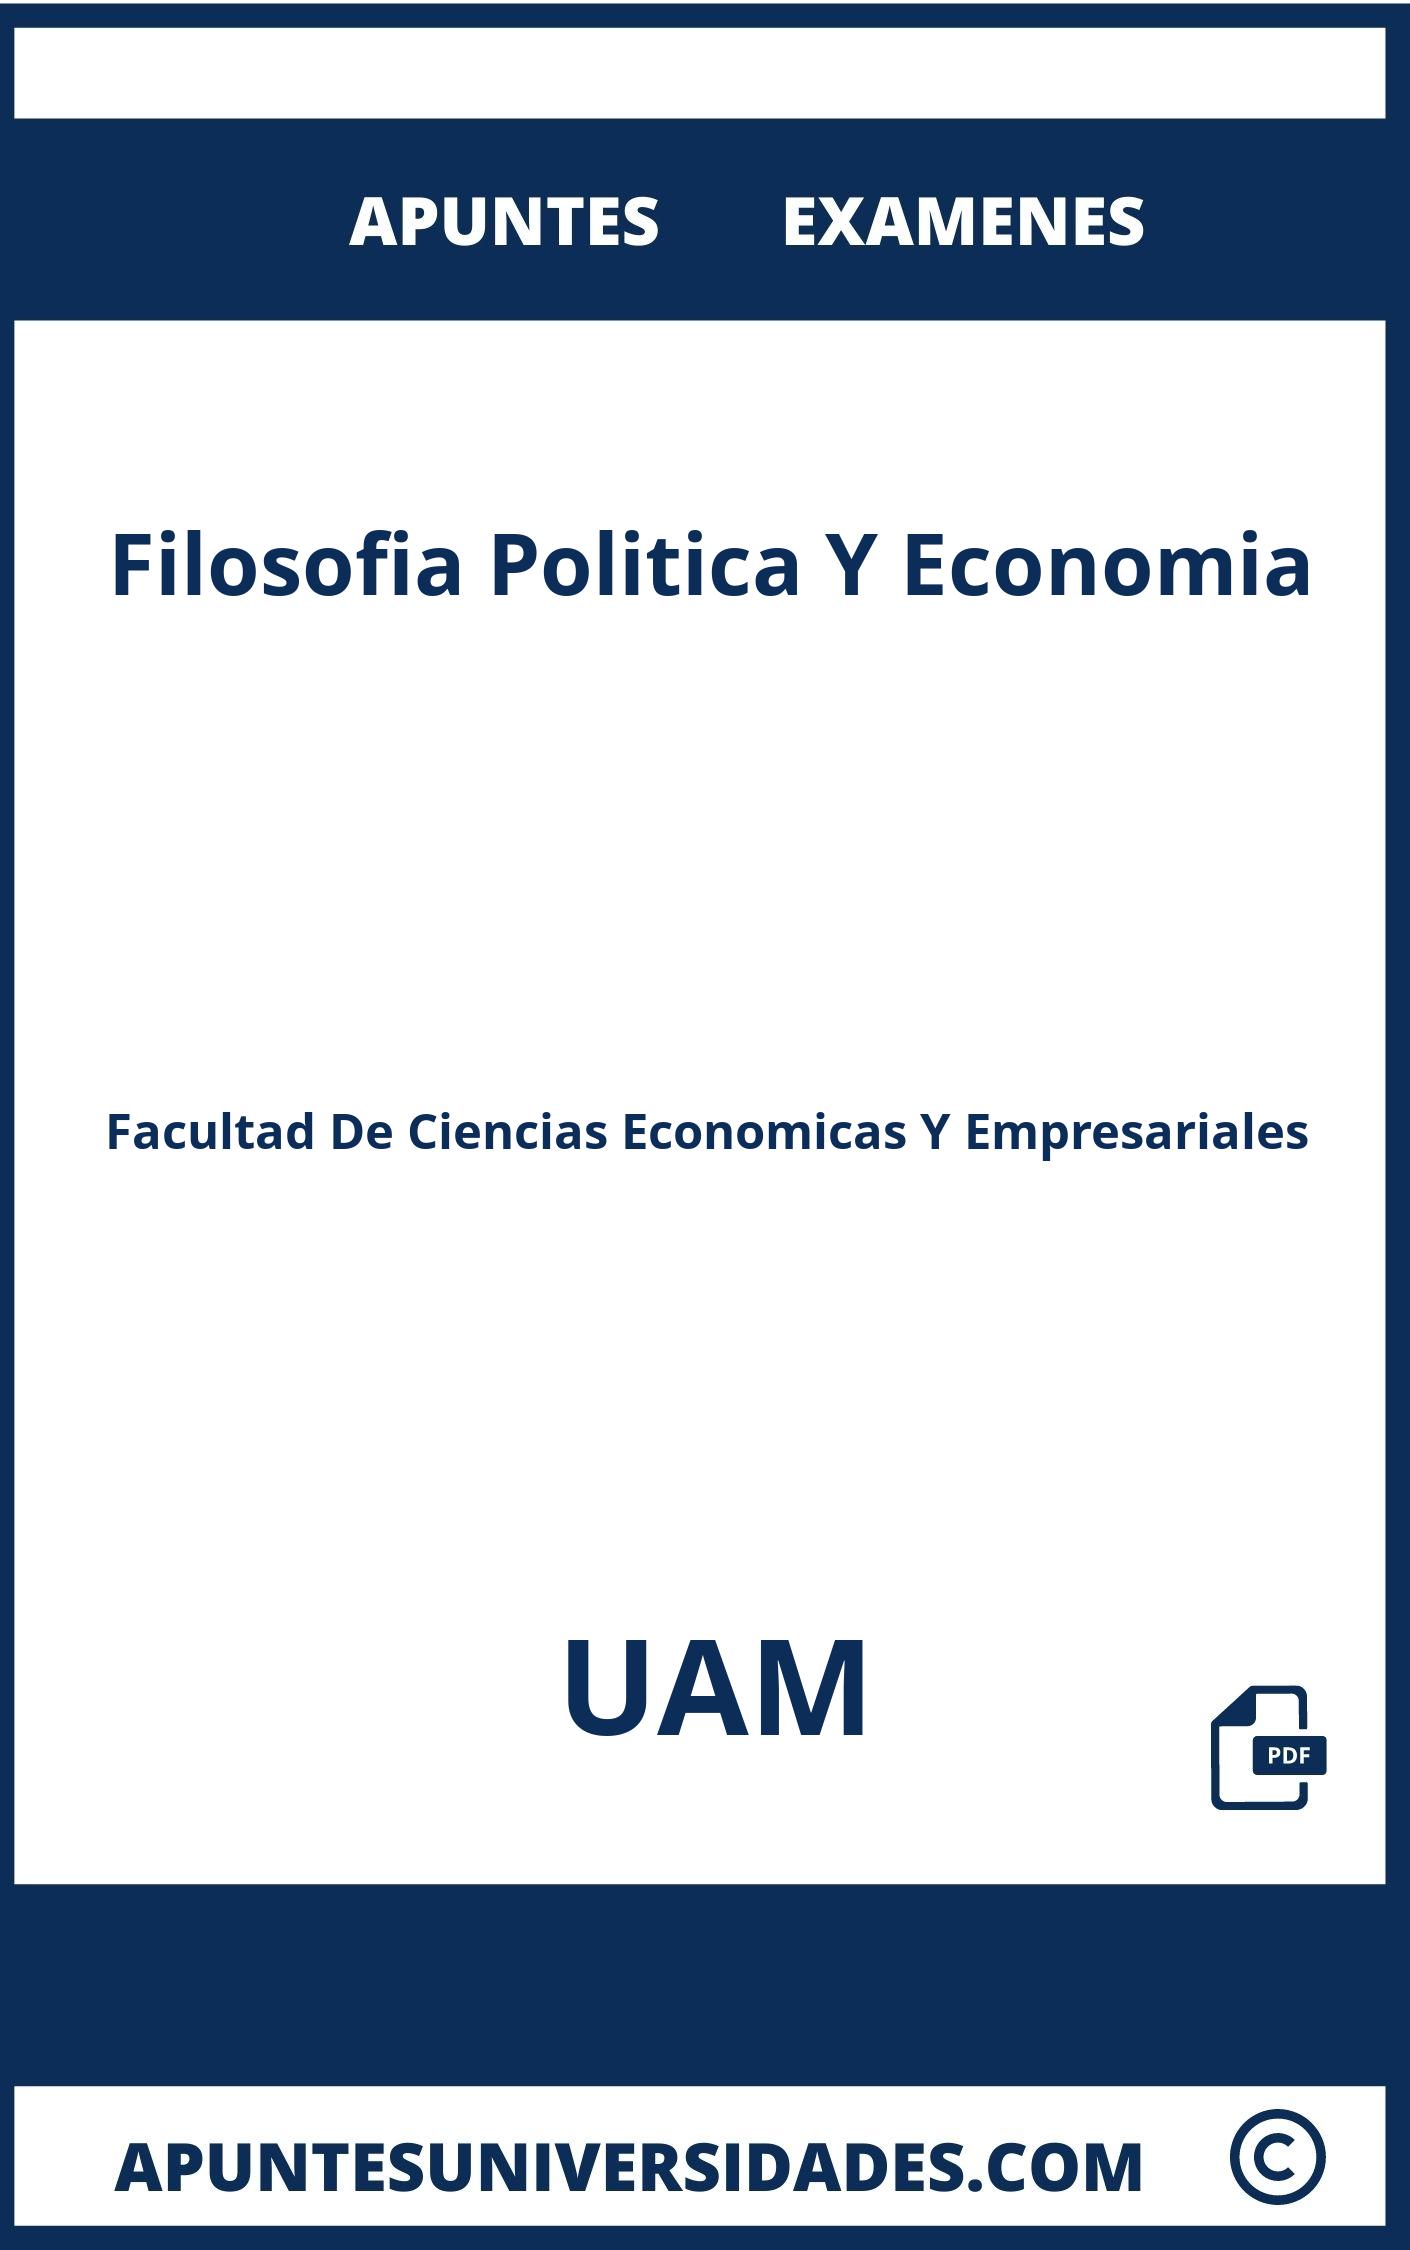 Examenes y Apuntes de Filosofia Politica Y Economia UAM